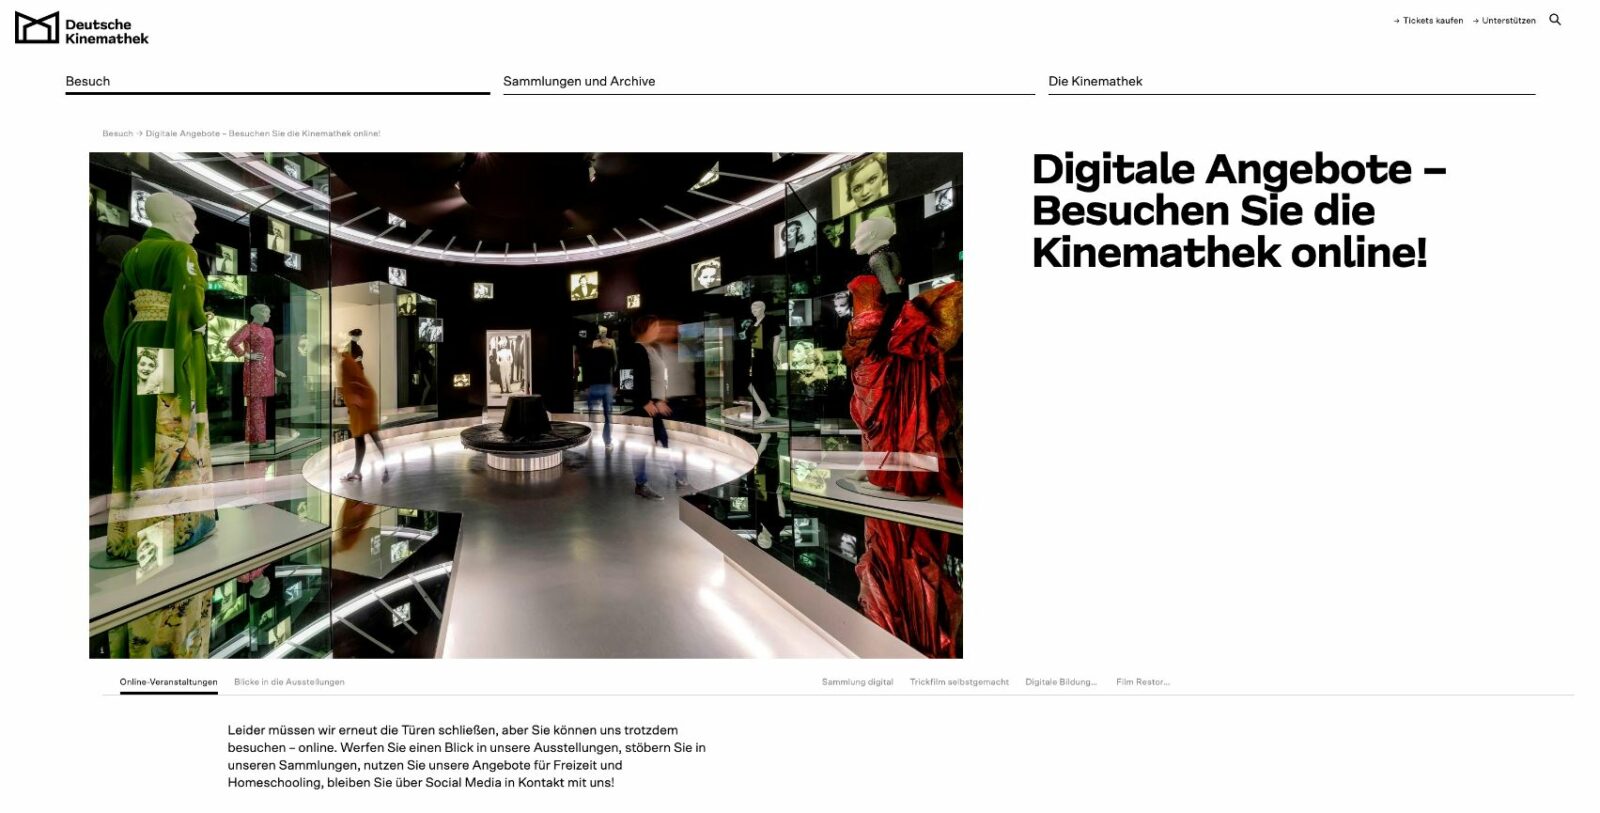 Digitale Angebote der Deutschen Kinemathek